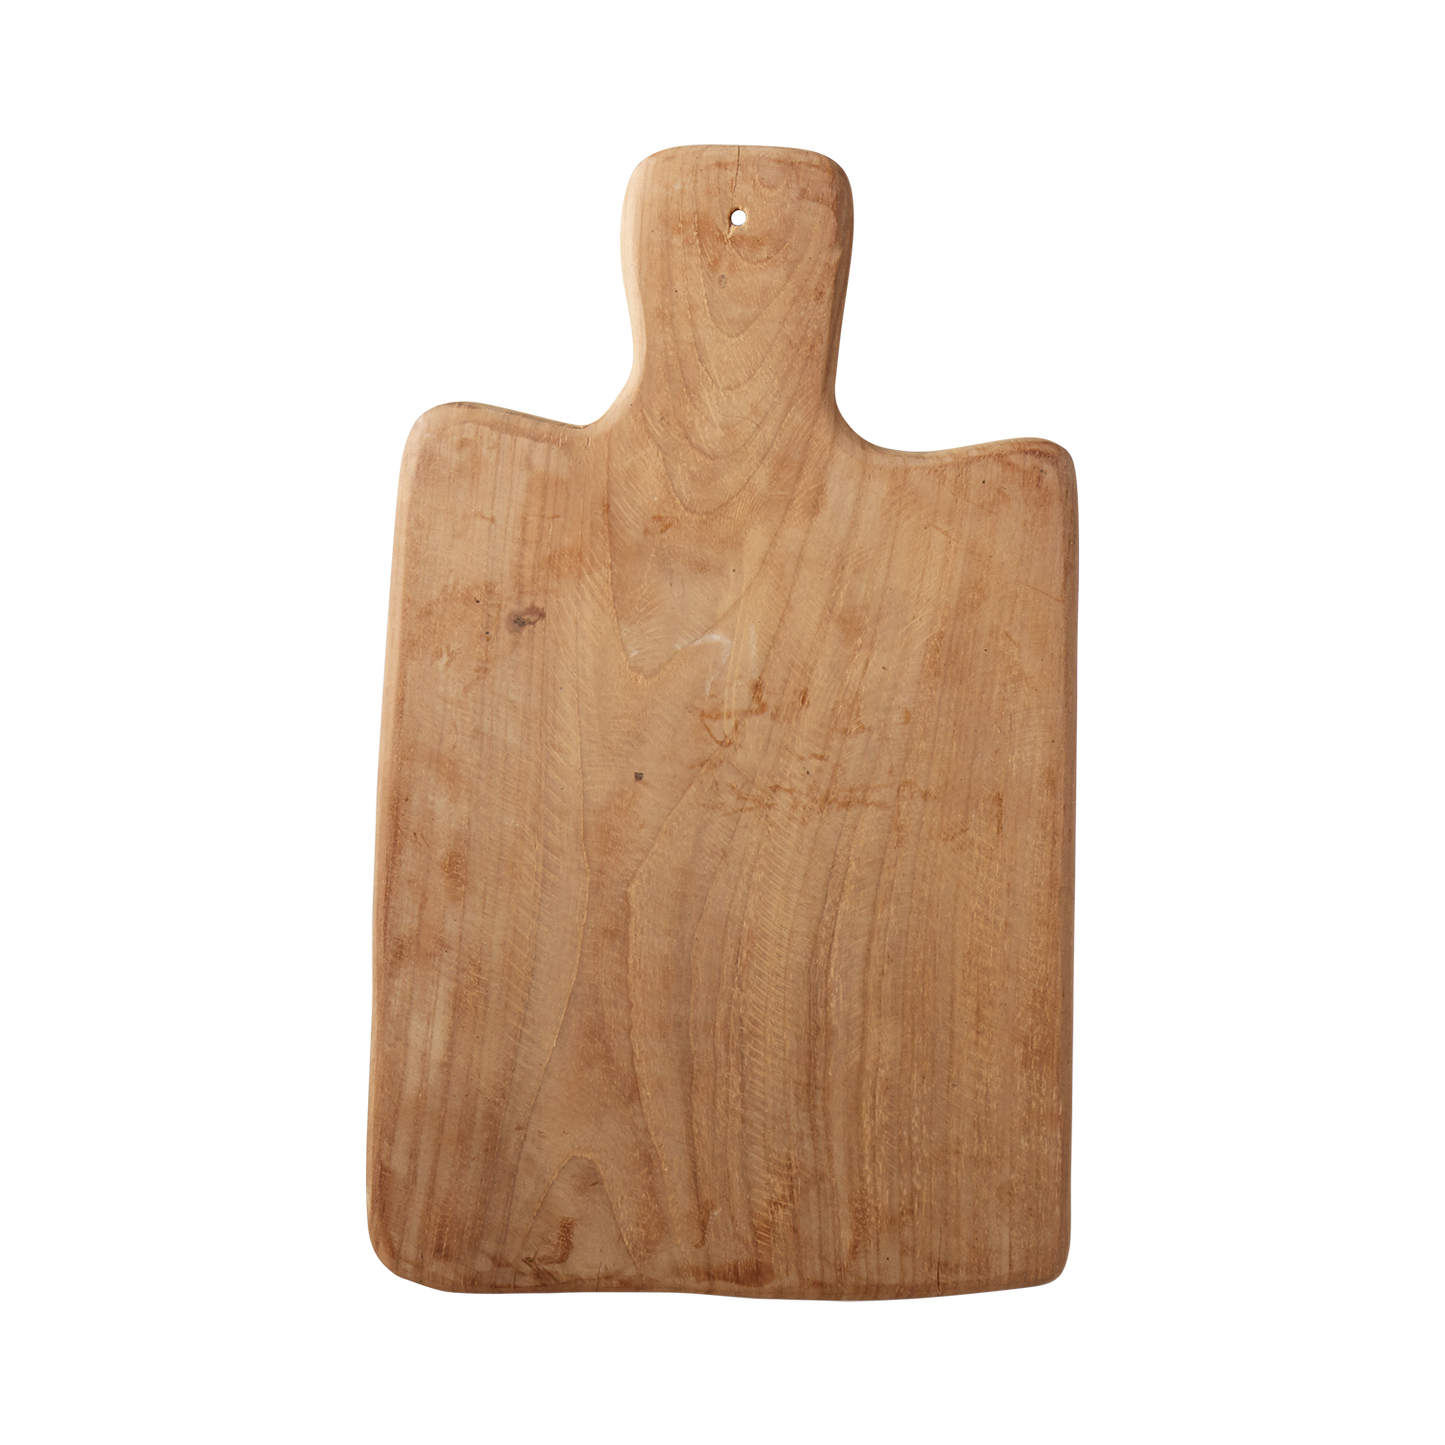 Natural teak board